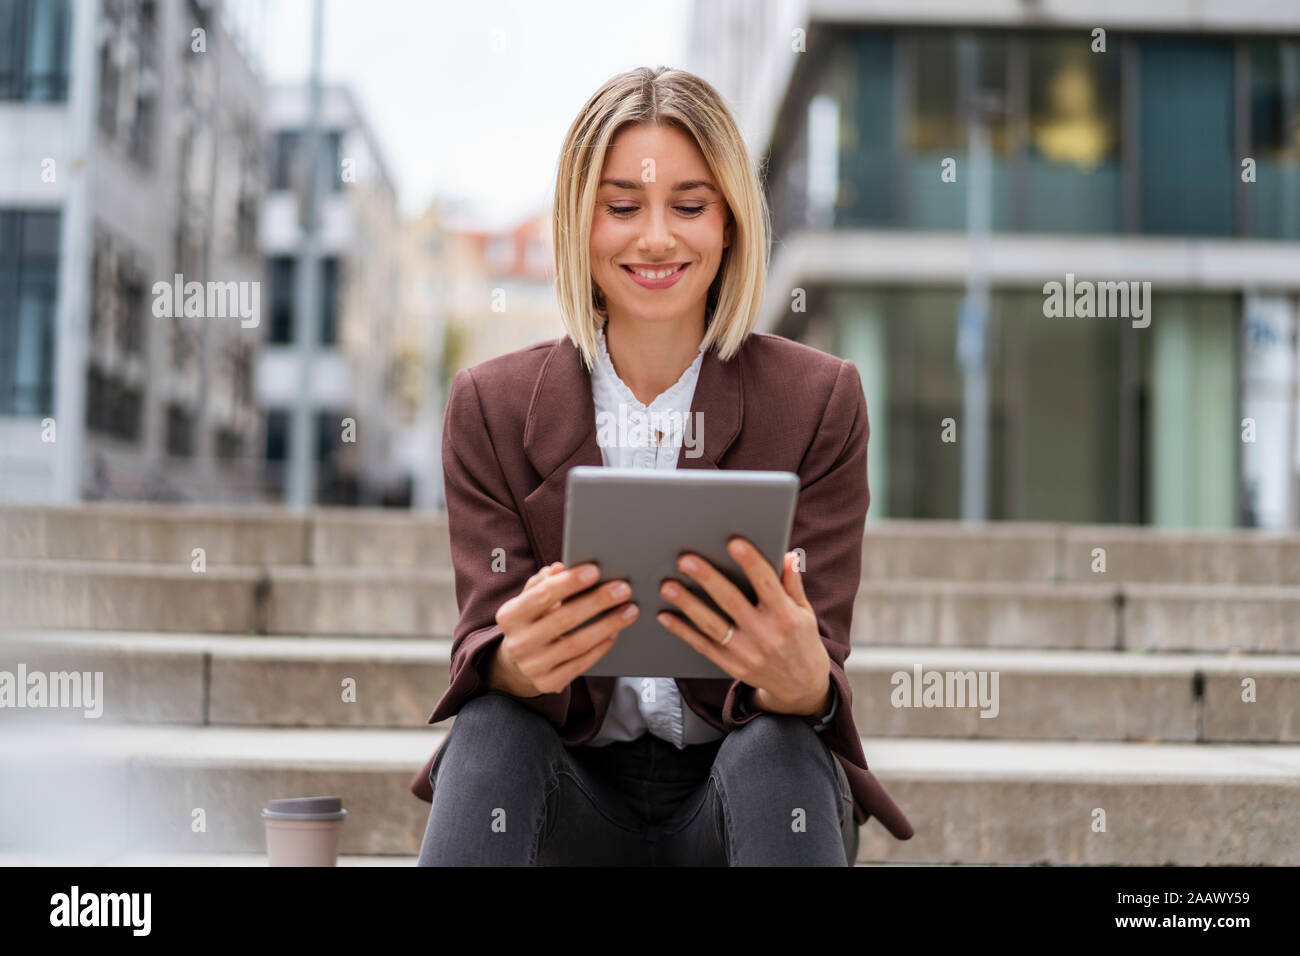 Smiling young businesswoman using tablet dans la ville Banque D'Images